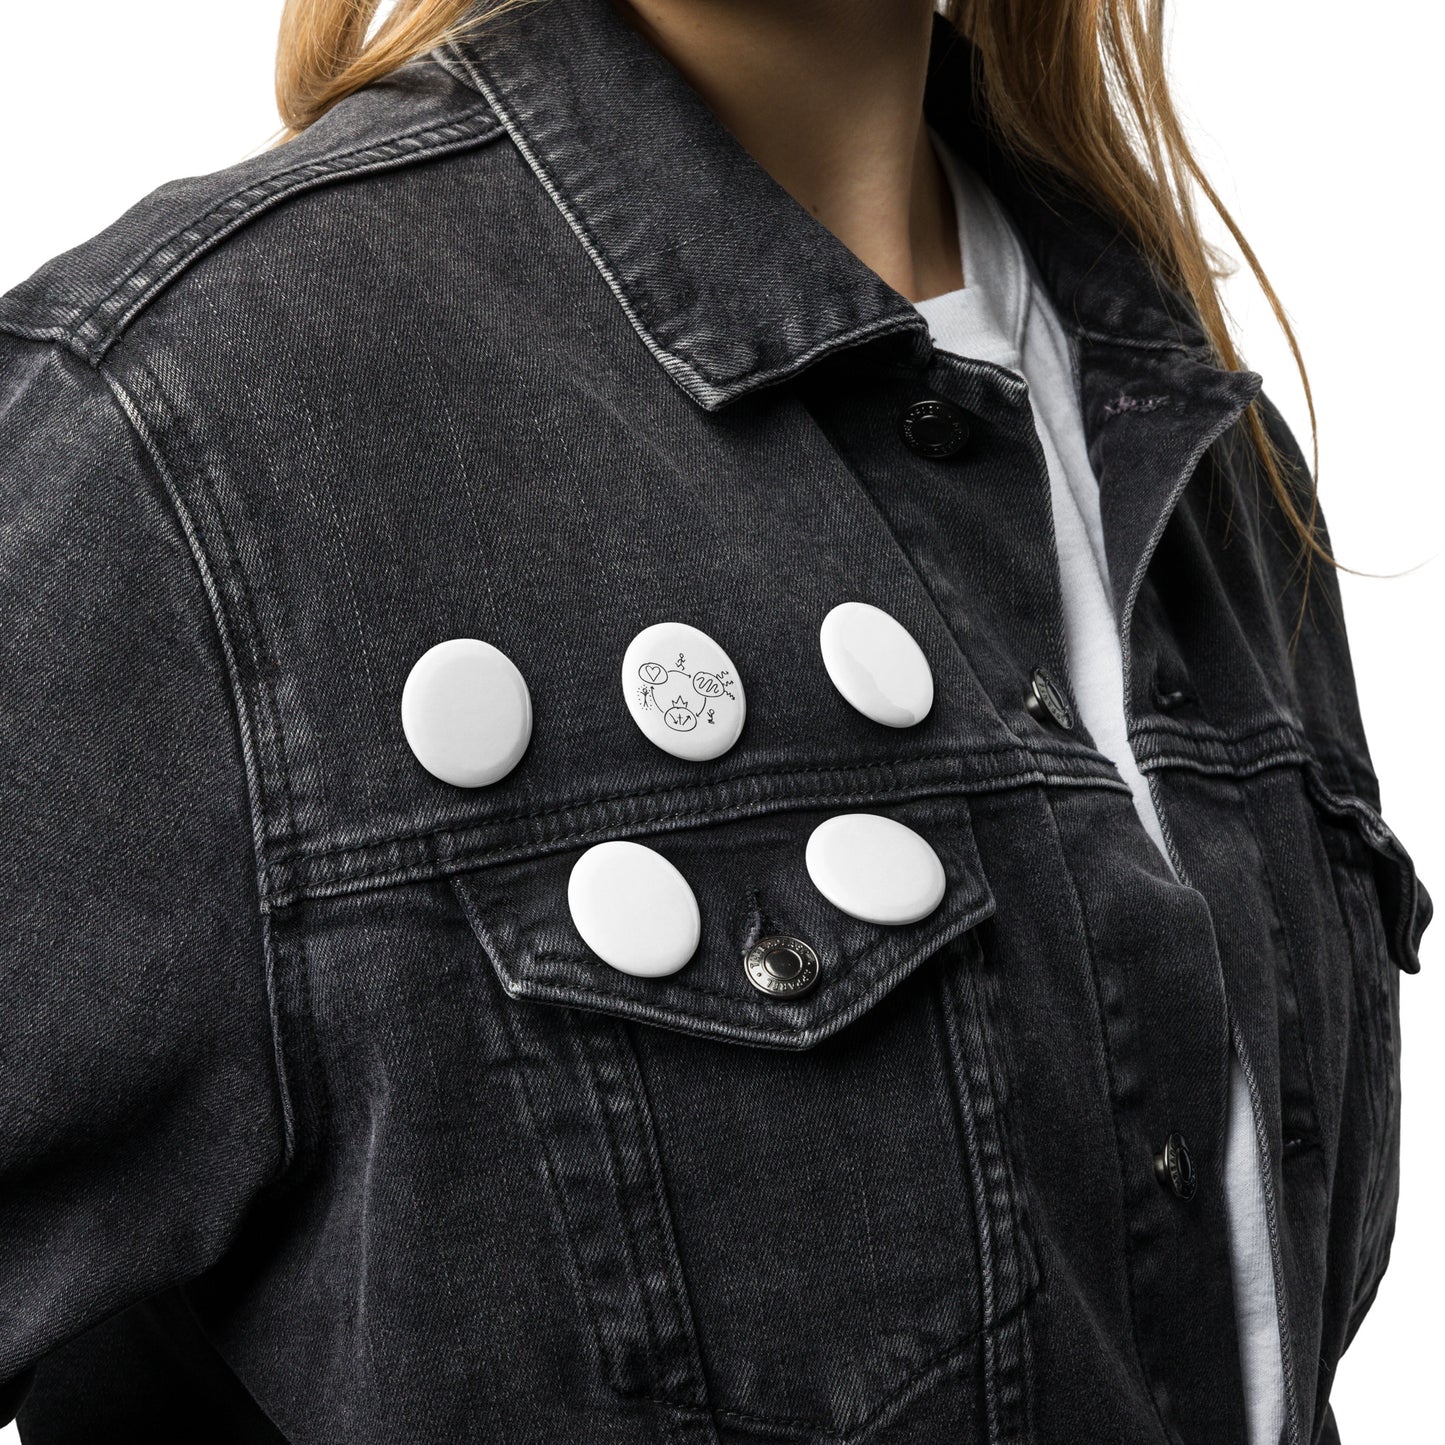 3-Circles Set of Pin Buttons